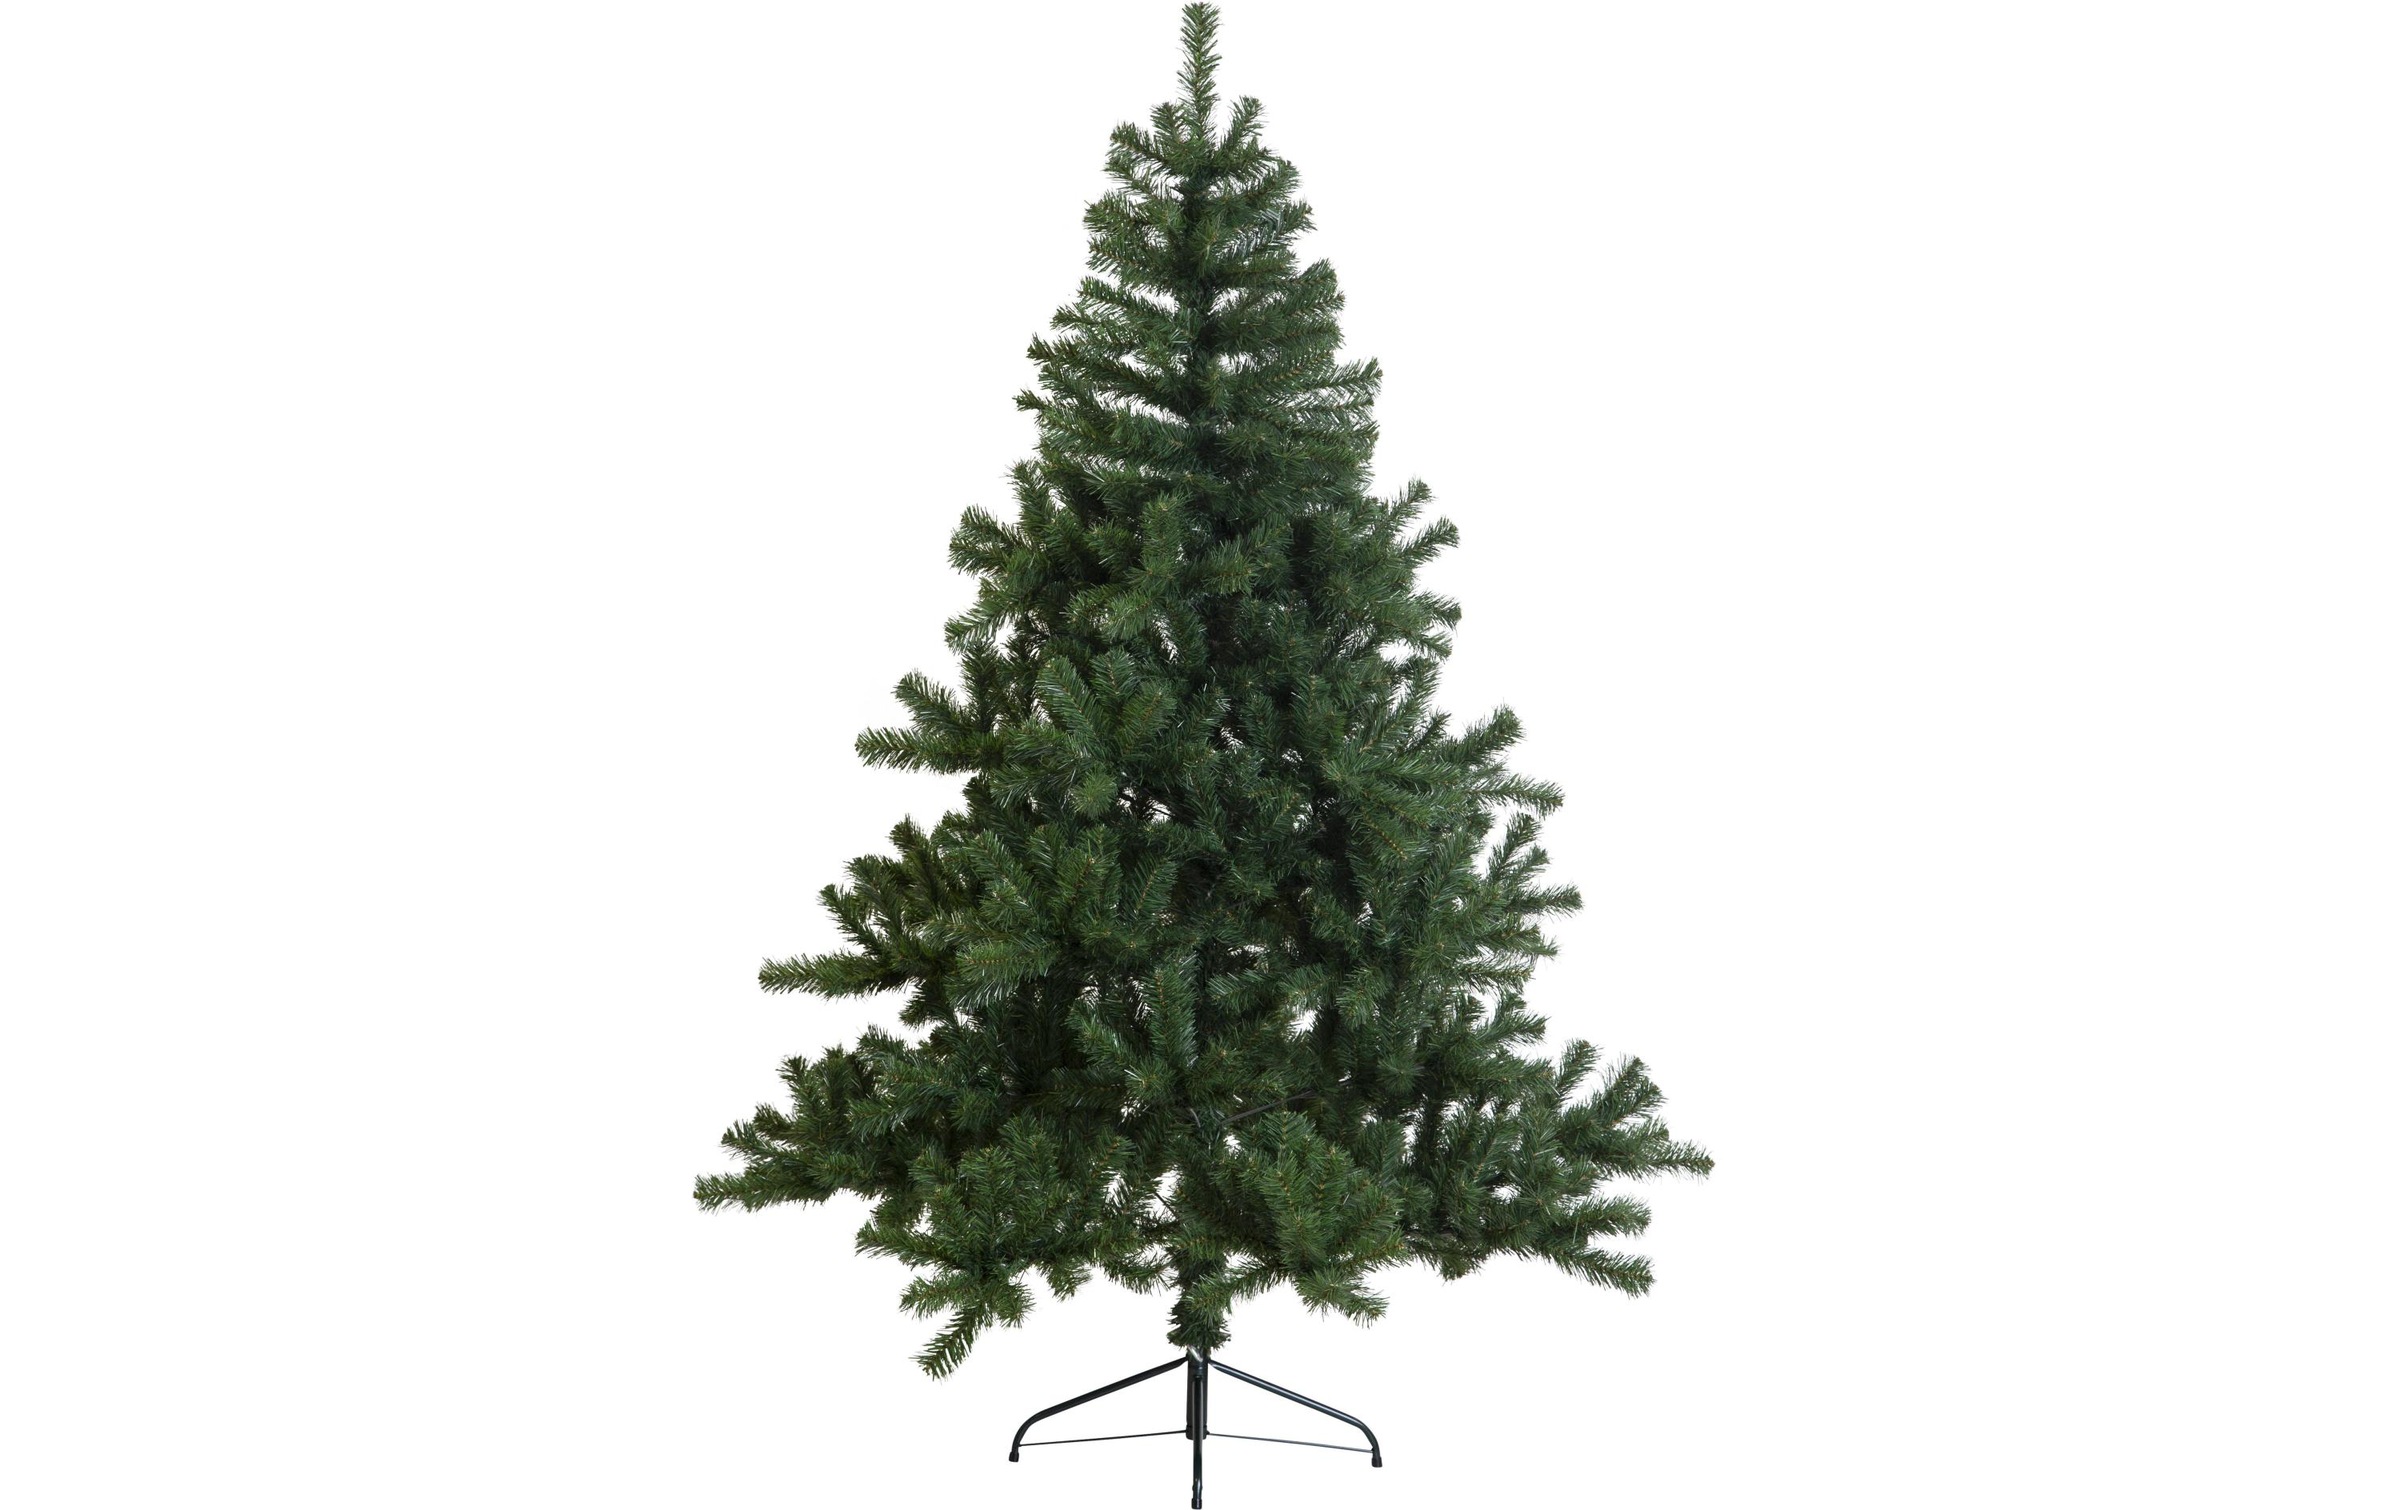 STAR TRADING Künstlicher Weihnachtsbaum »Weihnachtsbaum New Quebec 1.8 m«